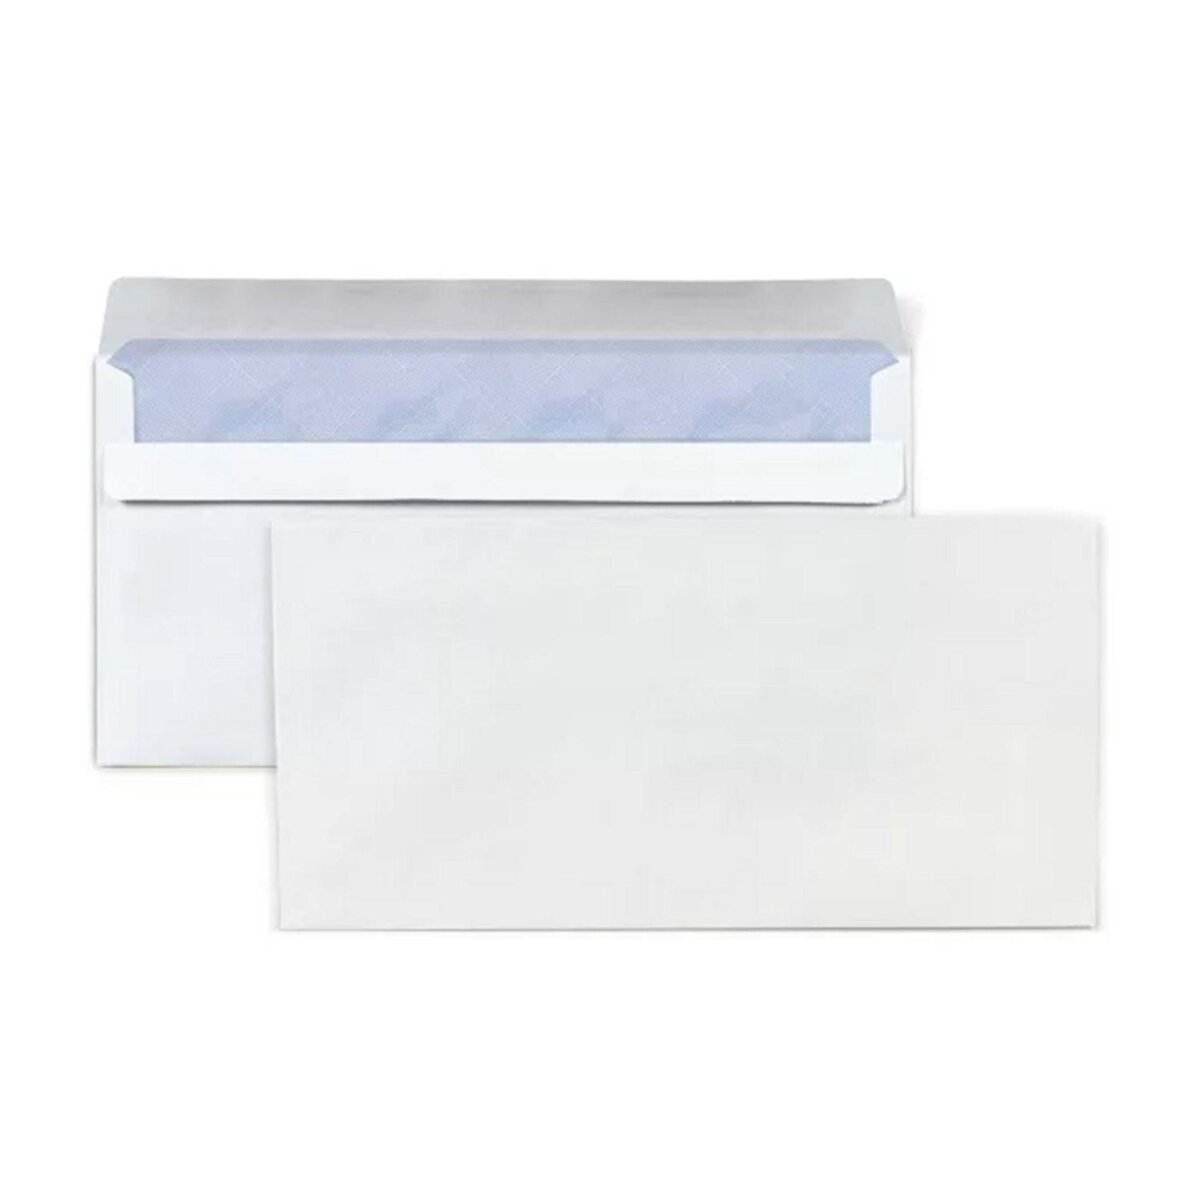 Acheter lot de 100 enveloppes (22 x 11 cm) pas cher